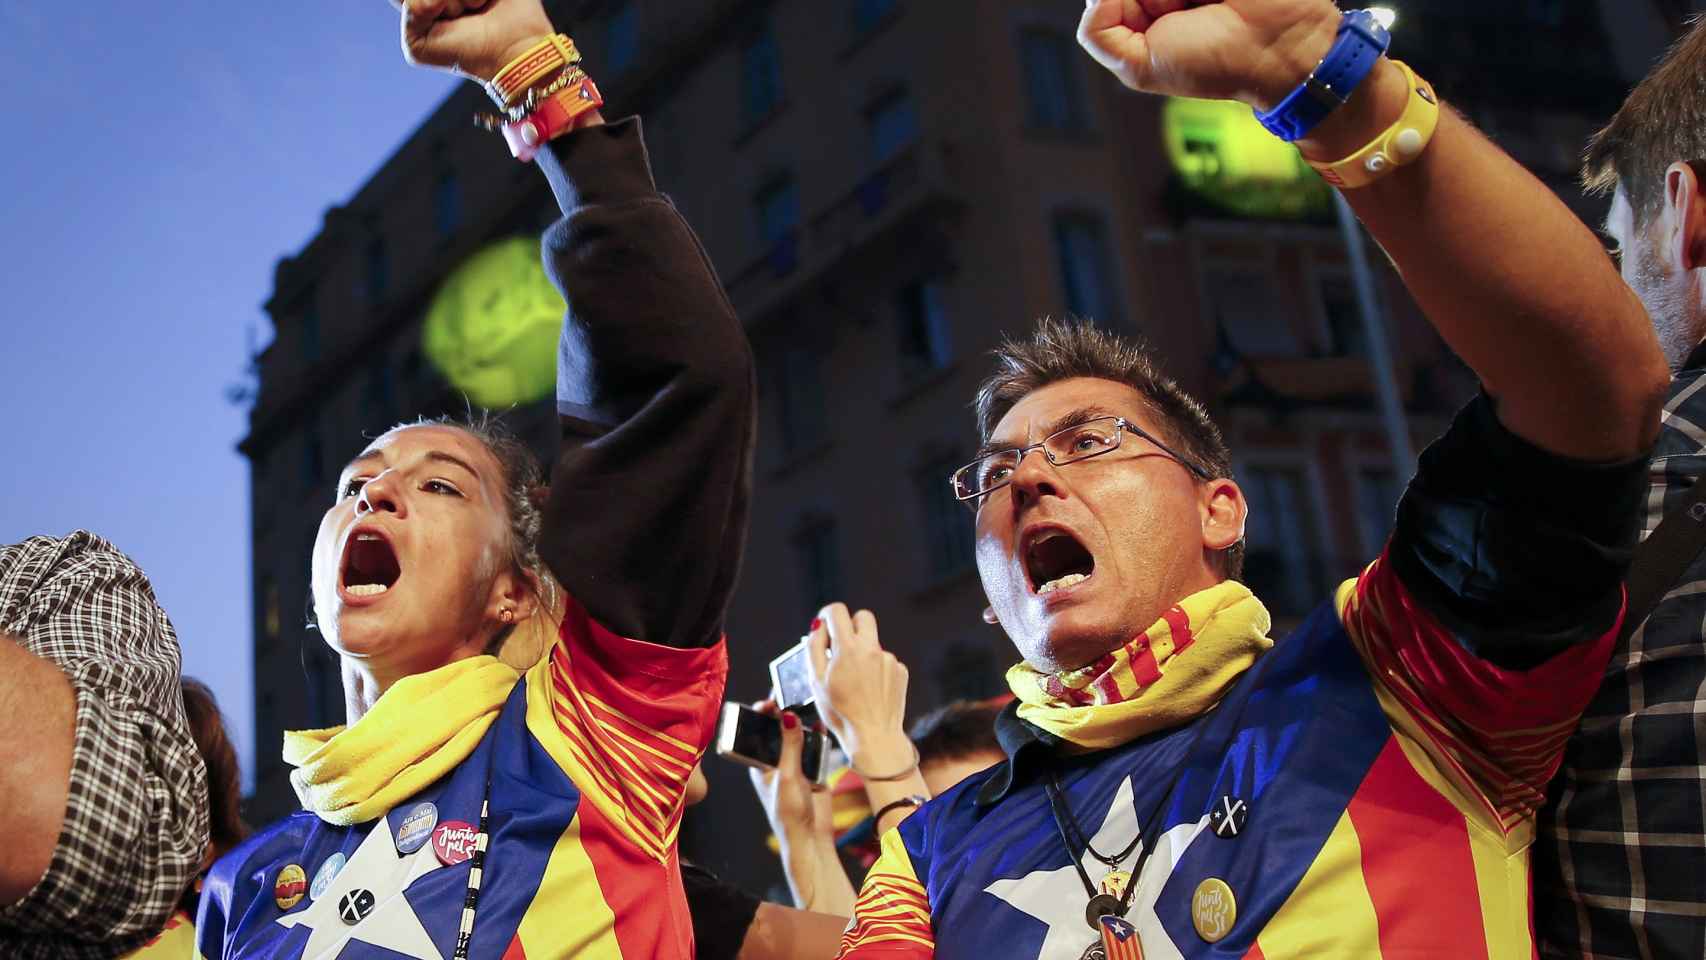 Simpatizantes de Junts pel Sí celebran los resultados en el centro de Barcelona